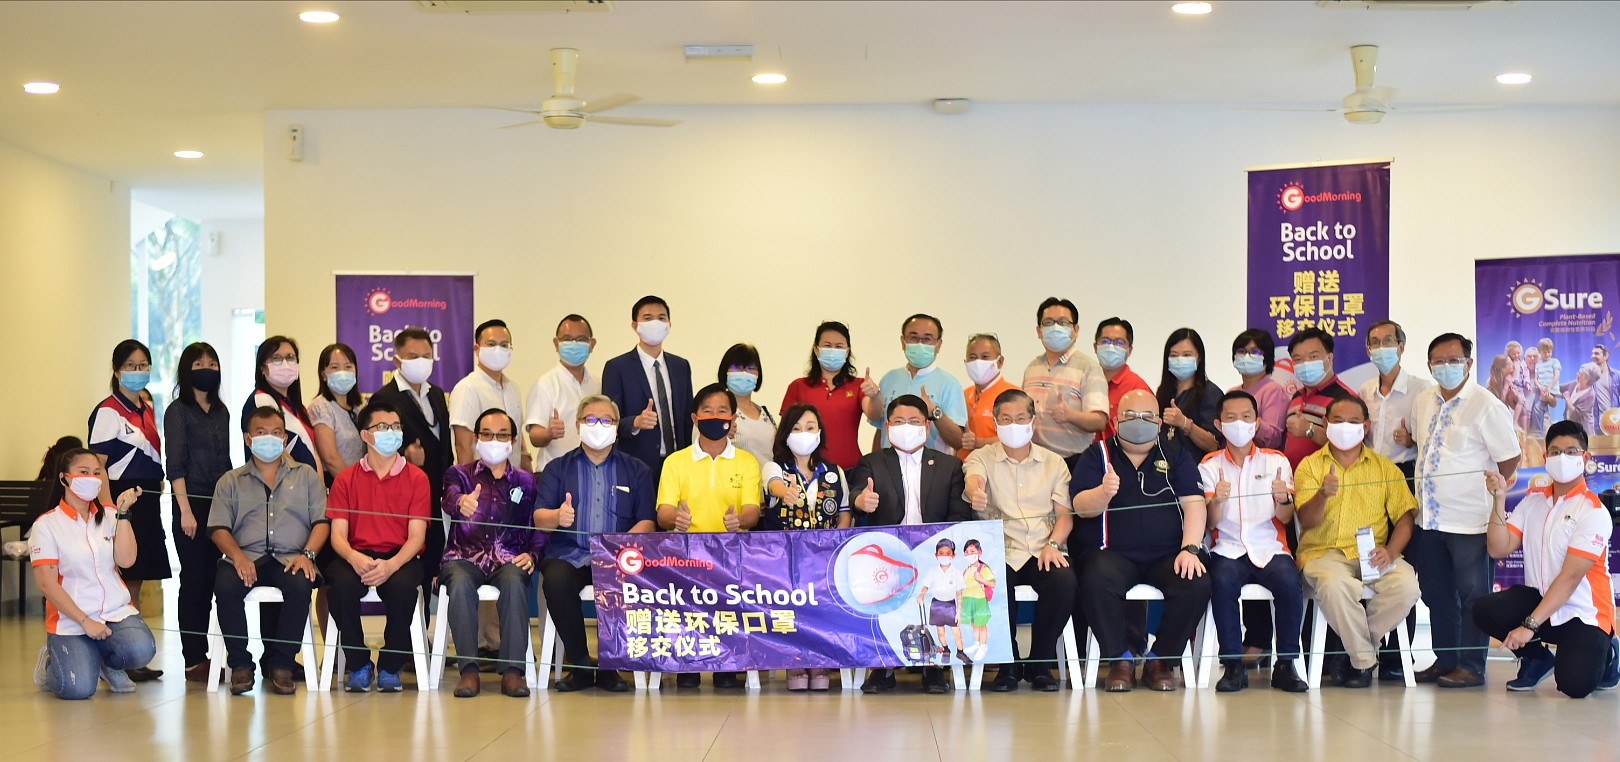 赠送环保口罩移交仪式 Reusable Mask Distribution Ceremony - Johor 15.08.2020 1